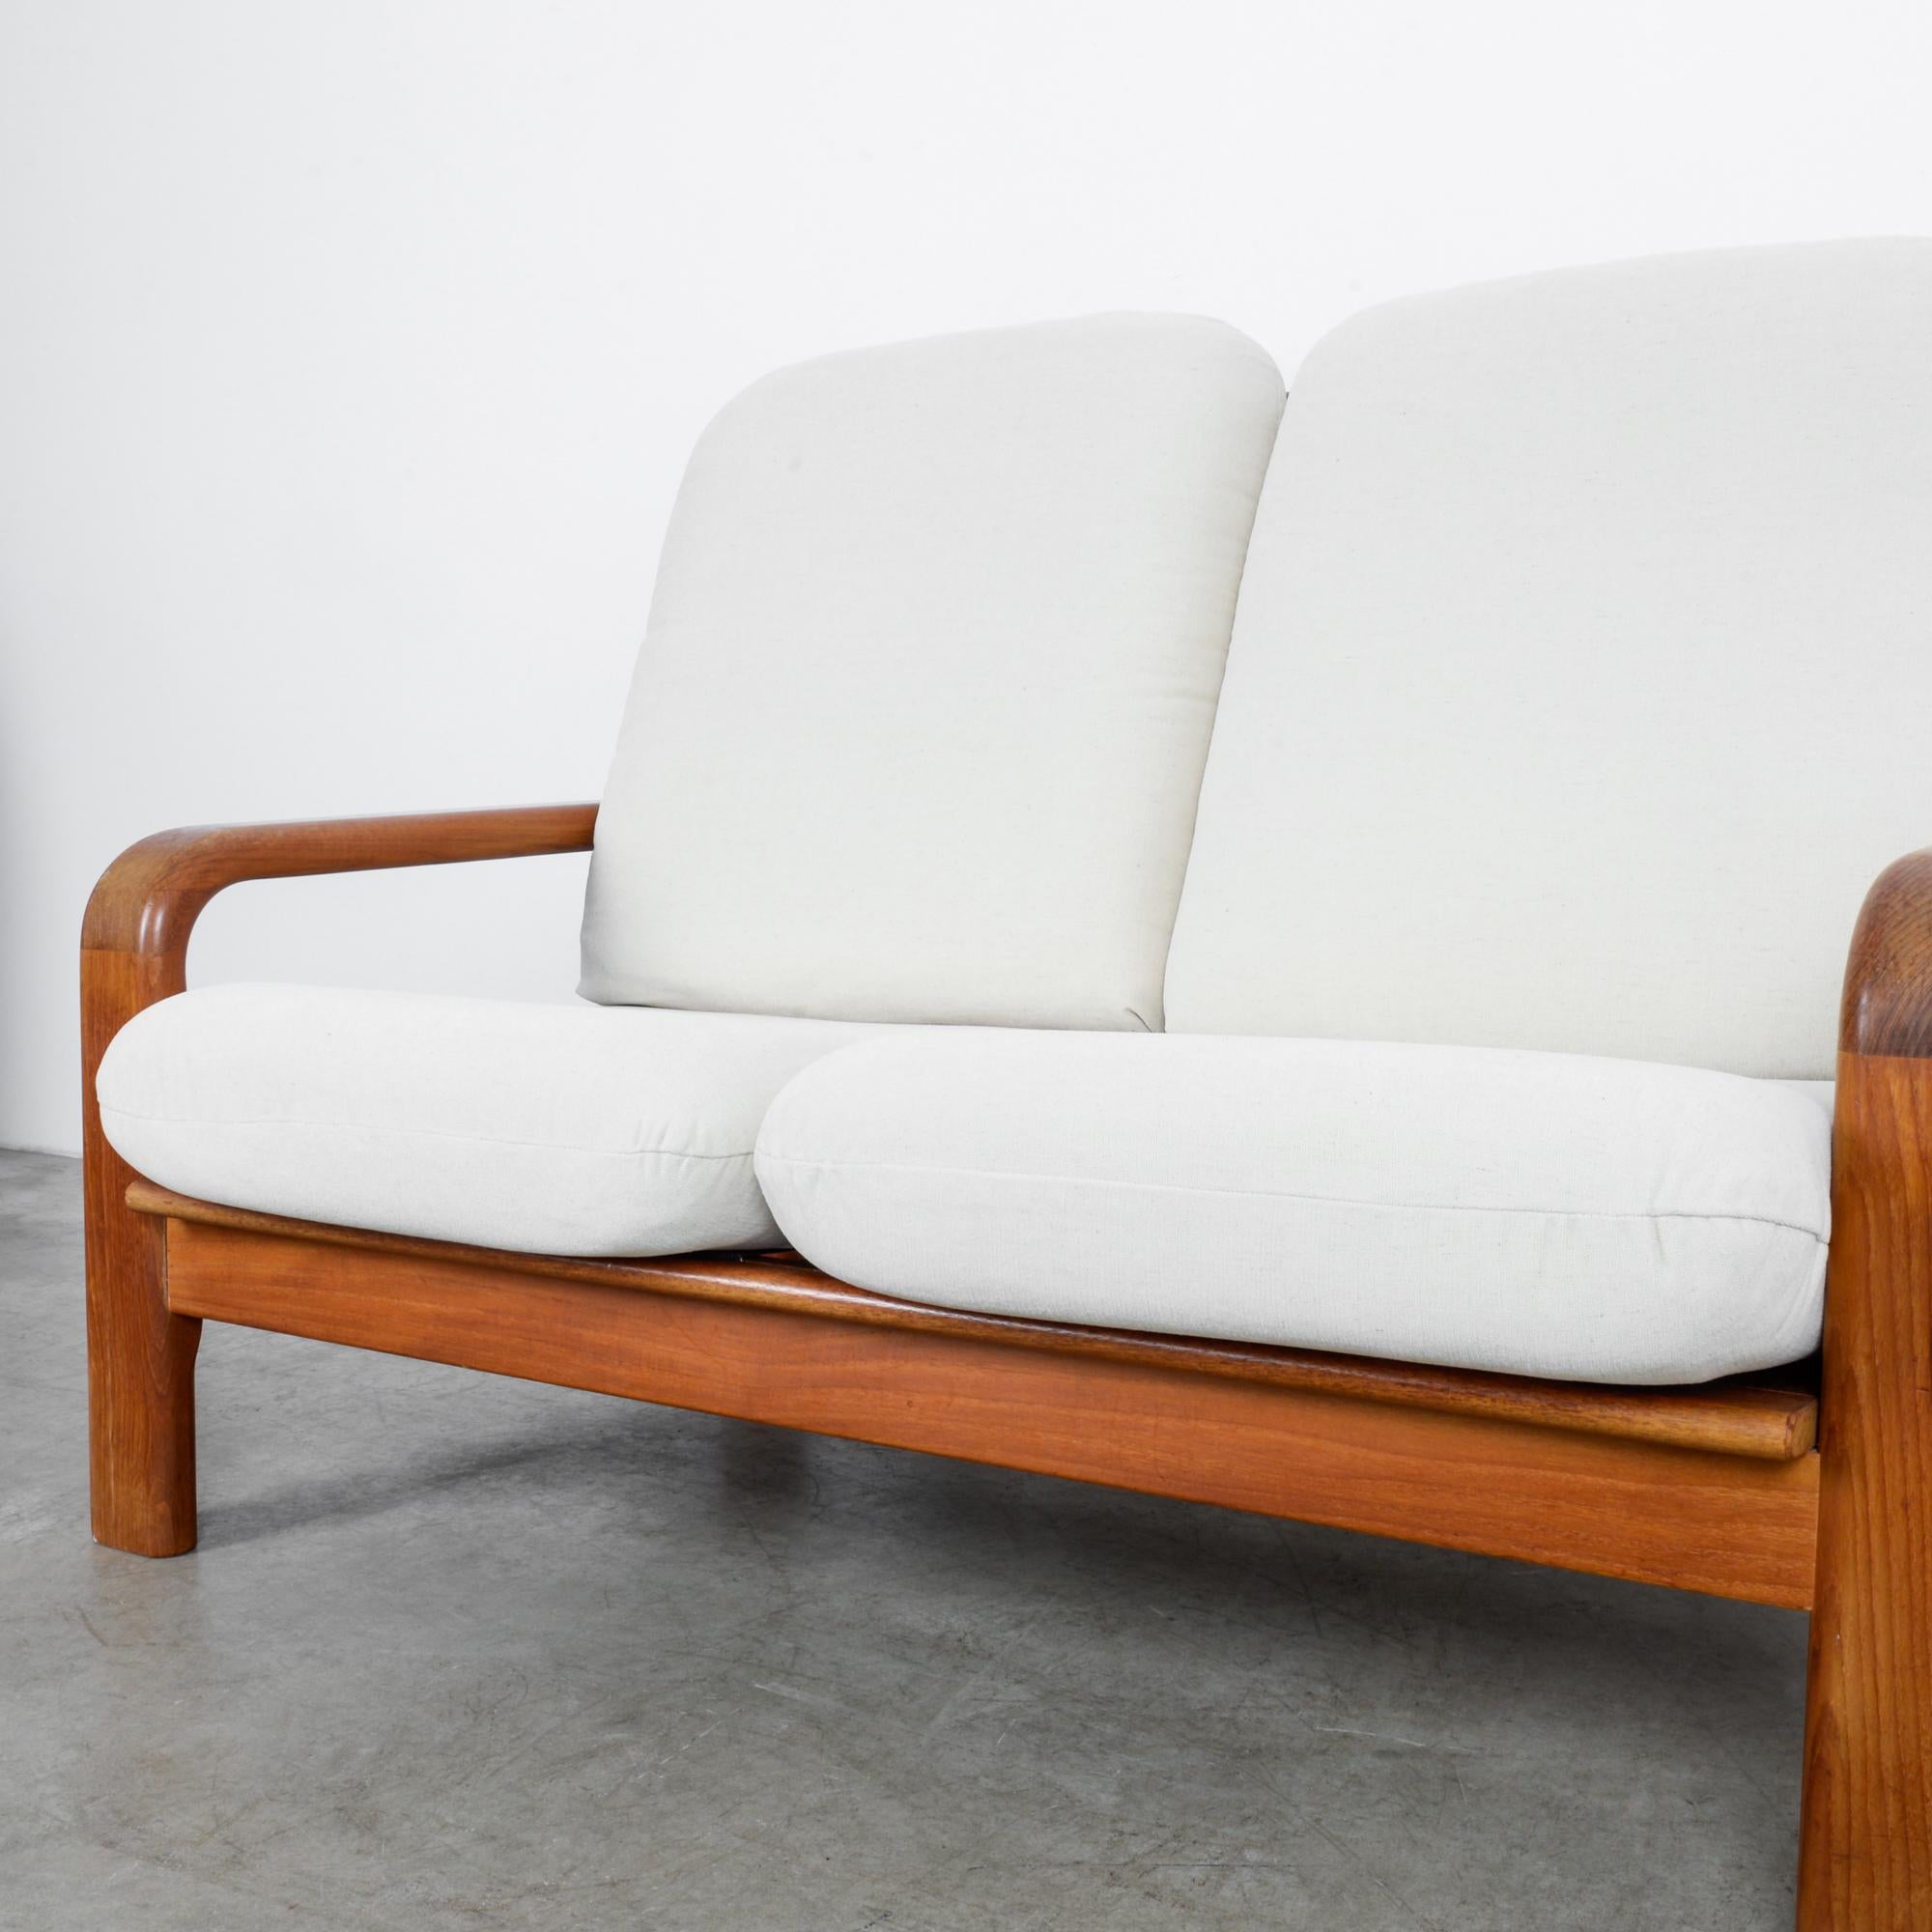 1960s danish modern furniture